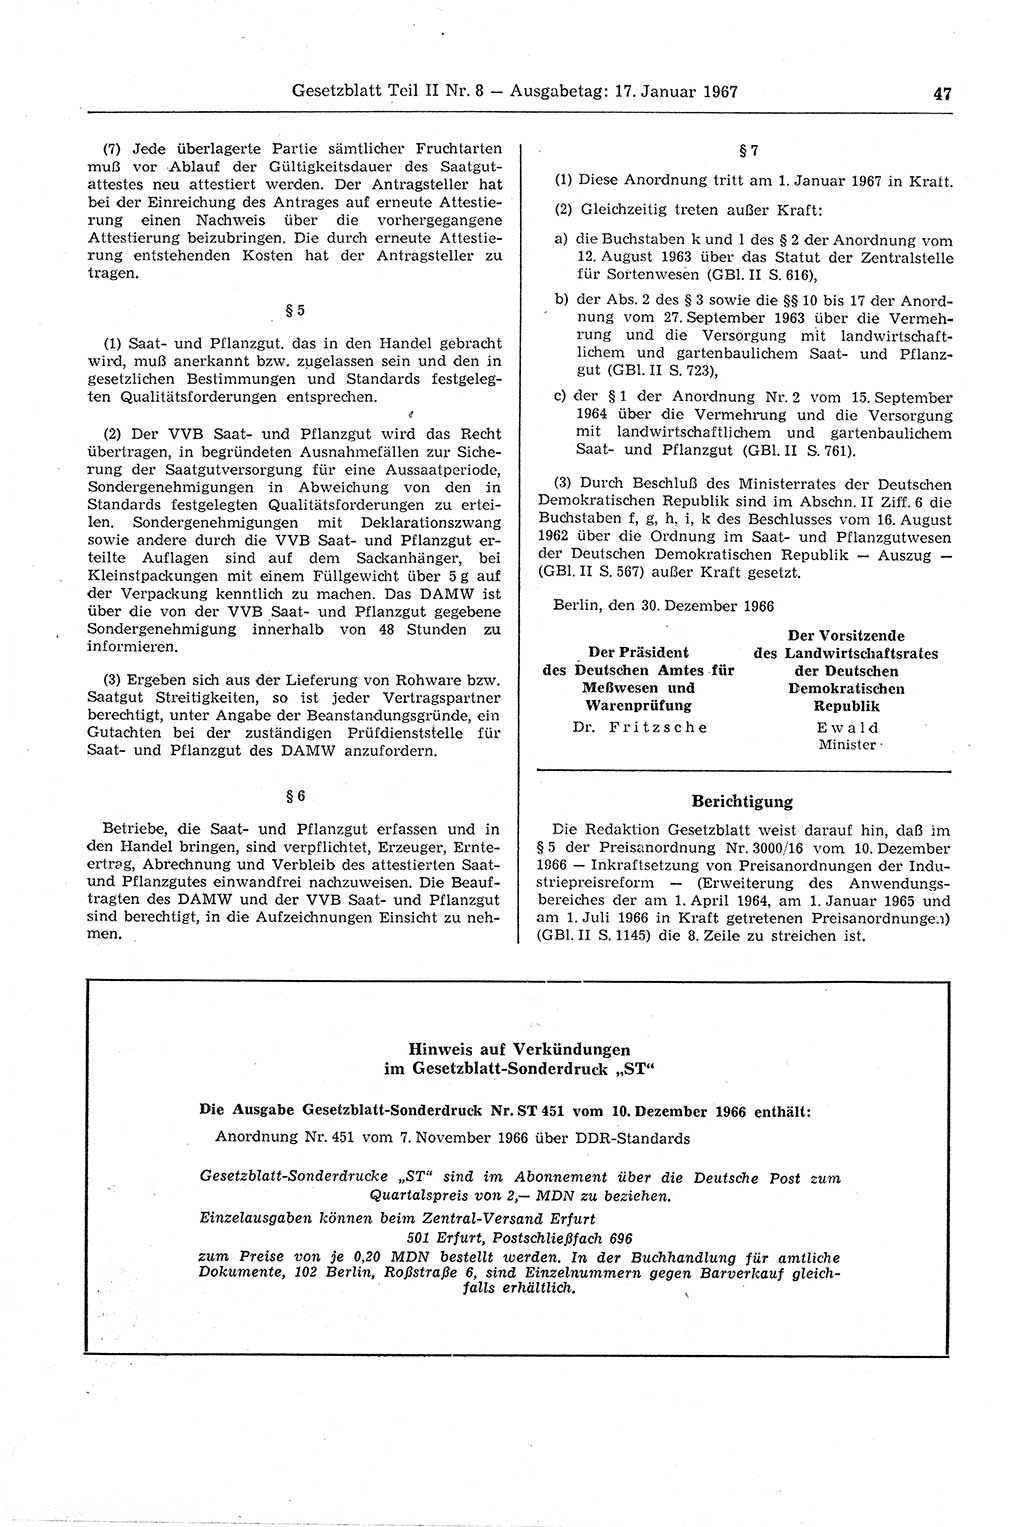 Gesetzblatt (GBl.) der Deutschen Demokratischen Republik (DDR) Teil ⅠⅠ 1967, Seite 47 (GBl. DDR ⅠⅠ 1967, S. 47)